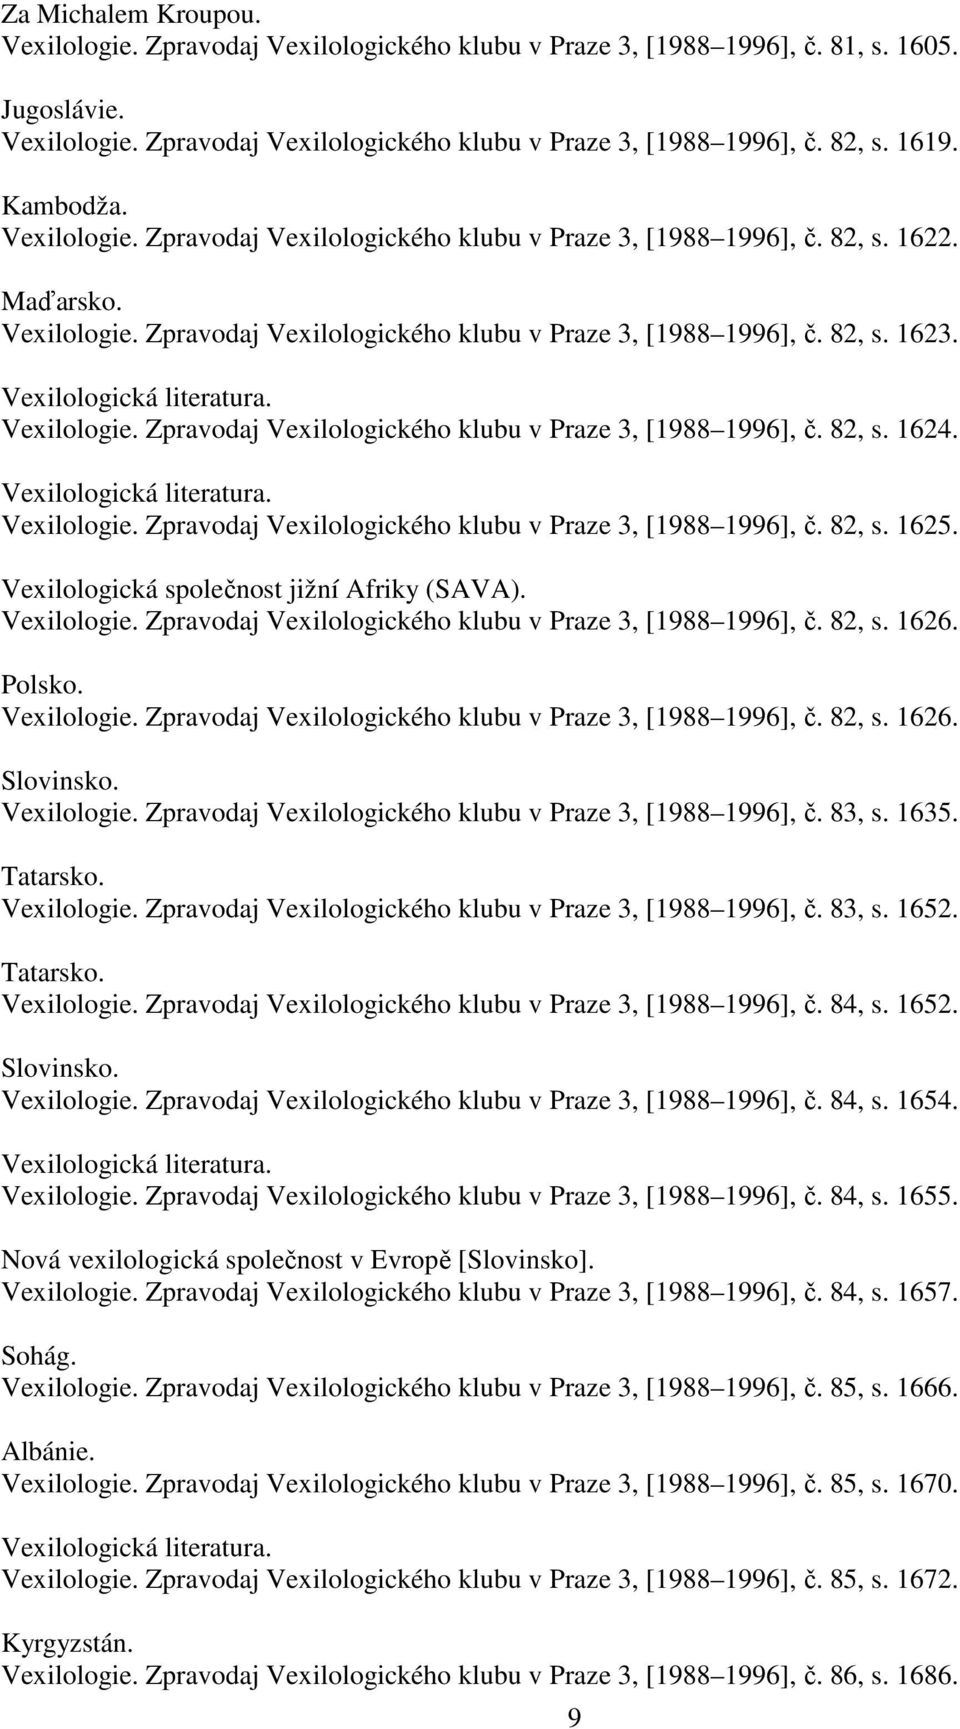 Vexilologie. Zpravodaj Vexilologického klubu v Praze 3, [1988 1996], č. 82, s. 1624. Vexilologie. Zpravodaj Vexilologického klubu v Praze 3, [1988 1996], č. 82, s. 1625.